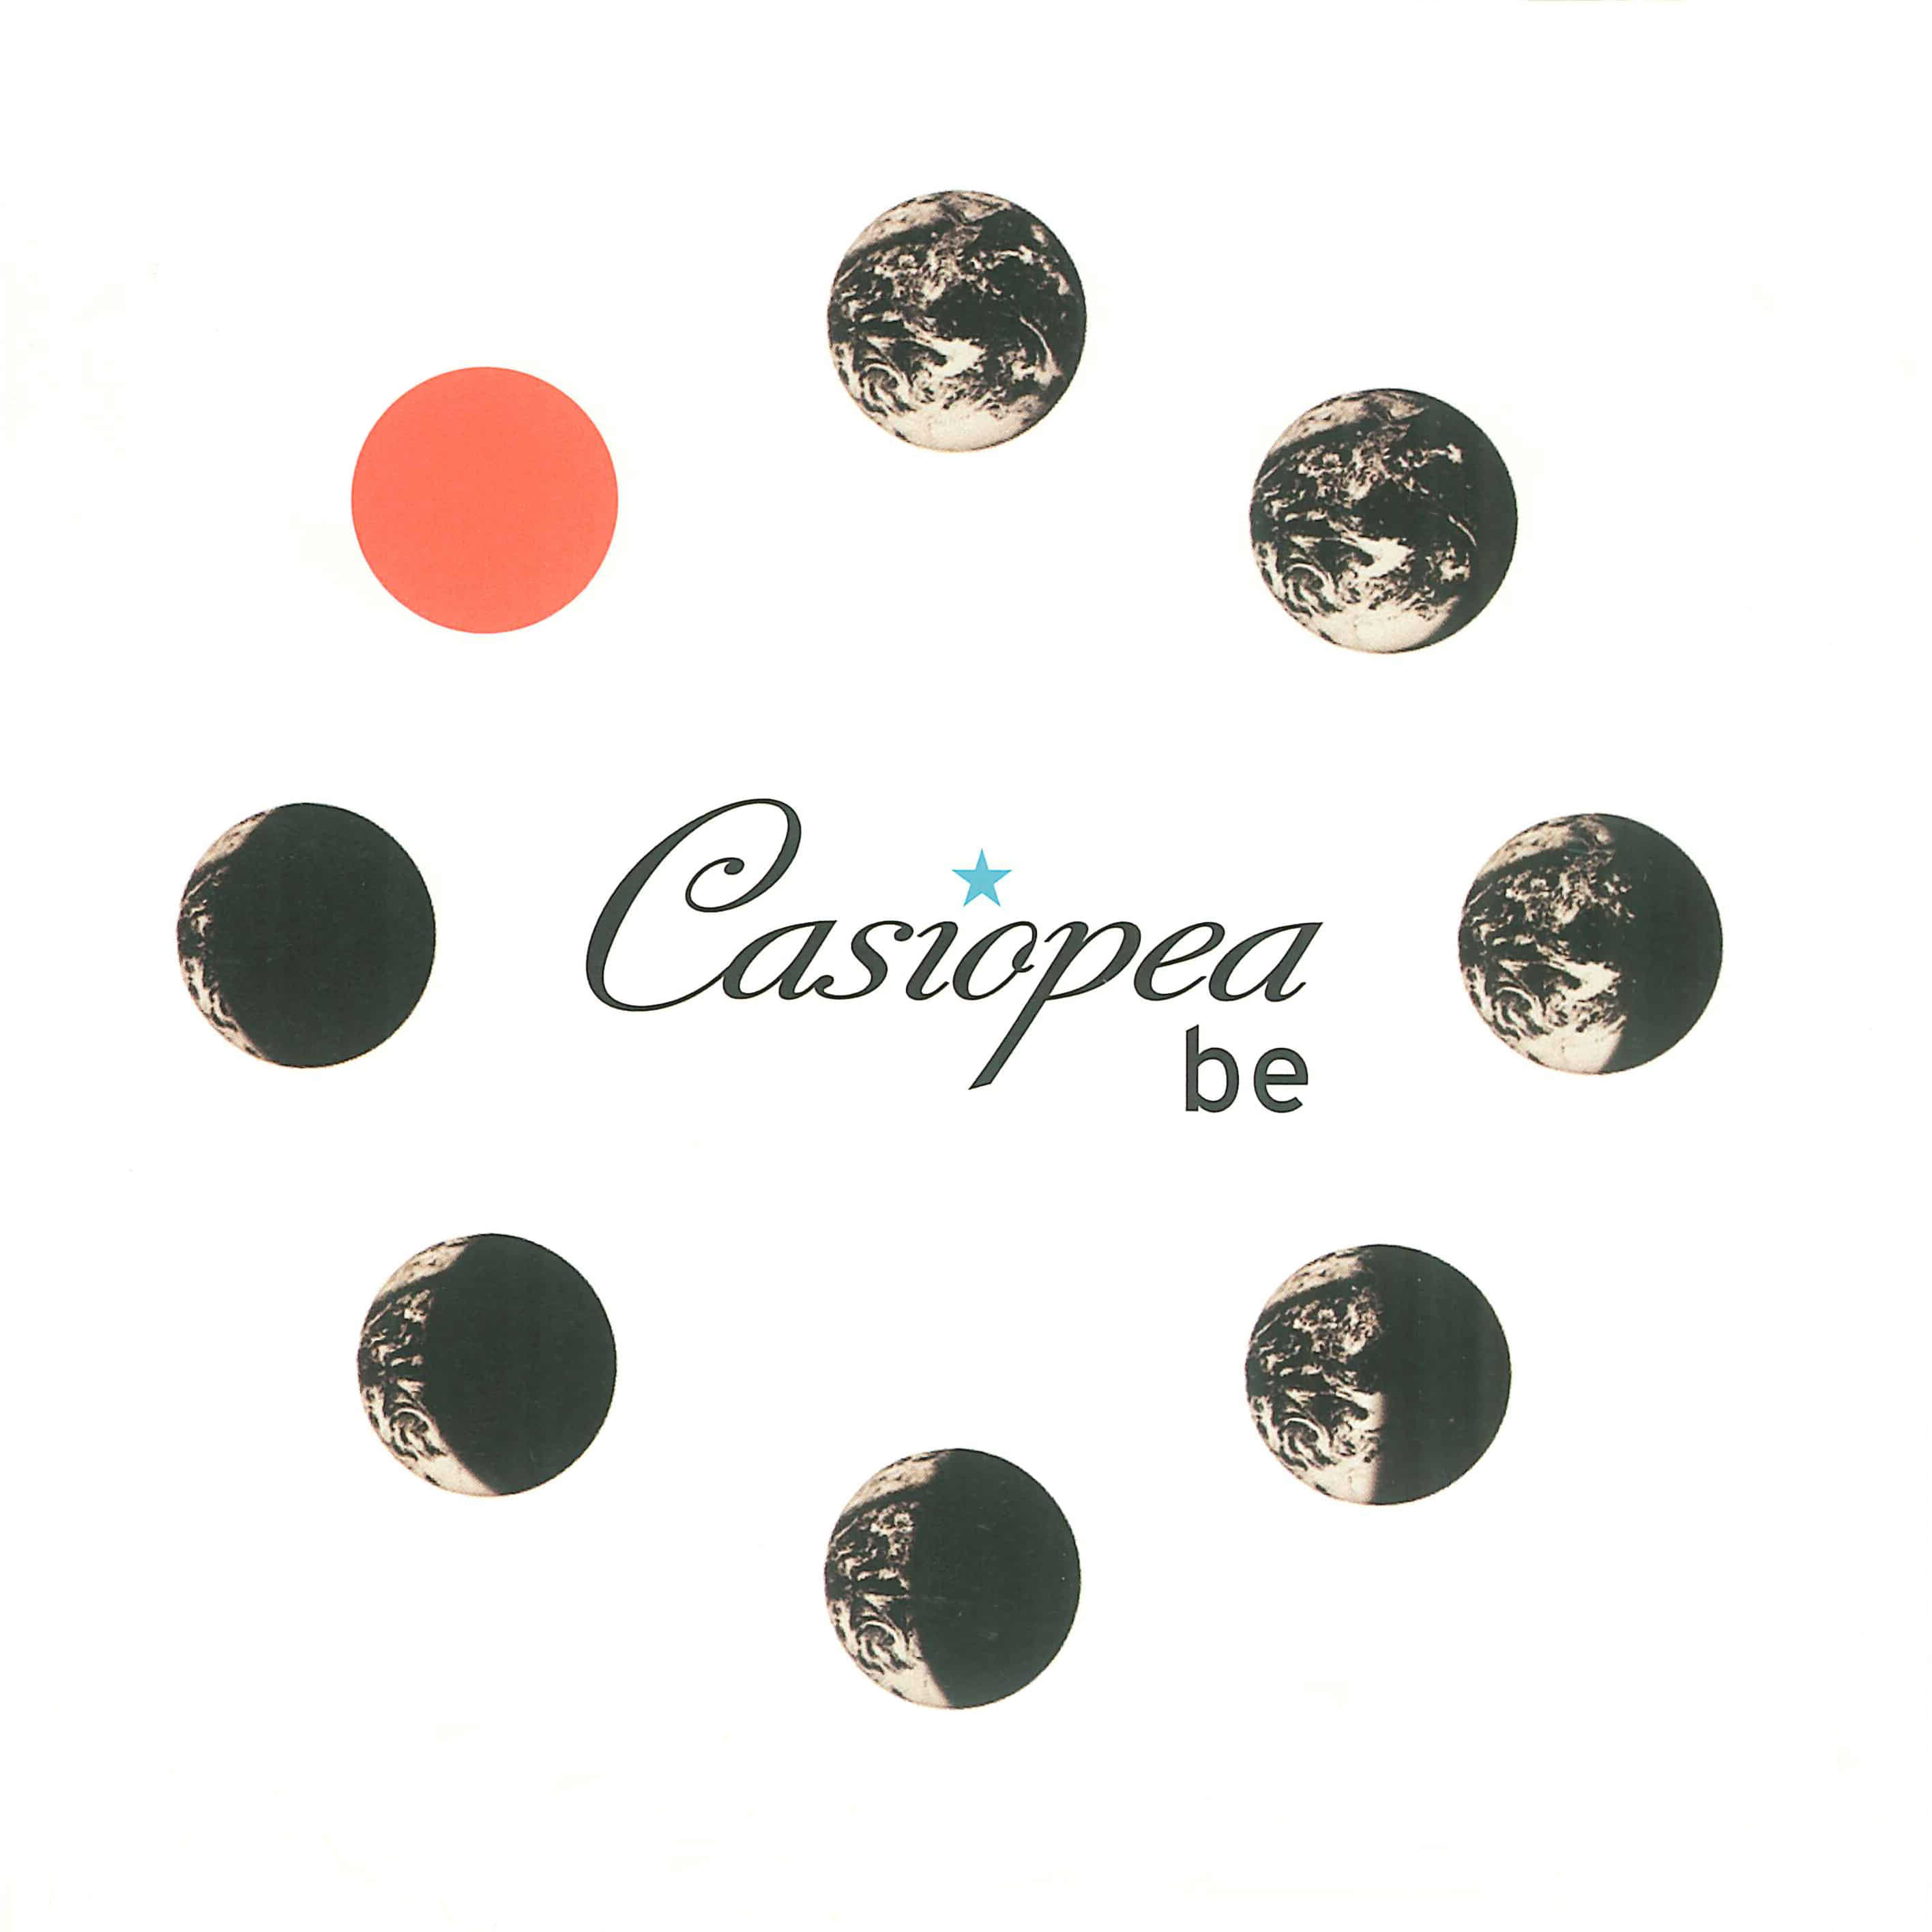 Casiopea-INNER CHILD